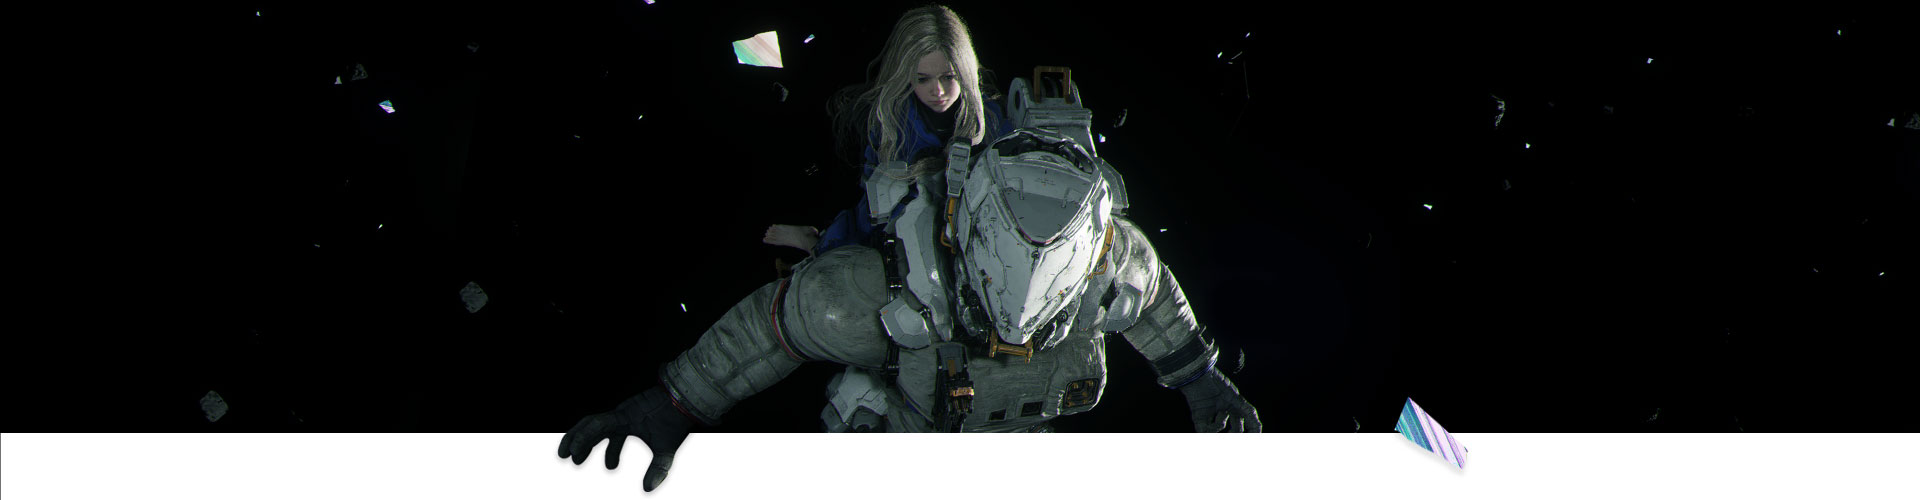 Una bambina sulla schiena di un astronauta in volo nello spazio